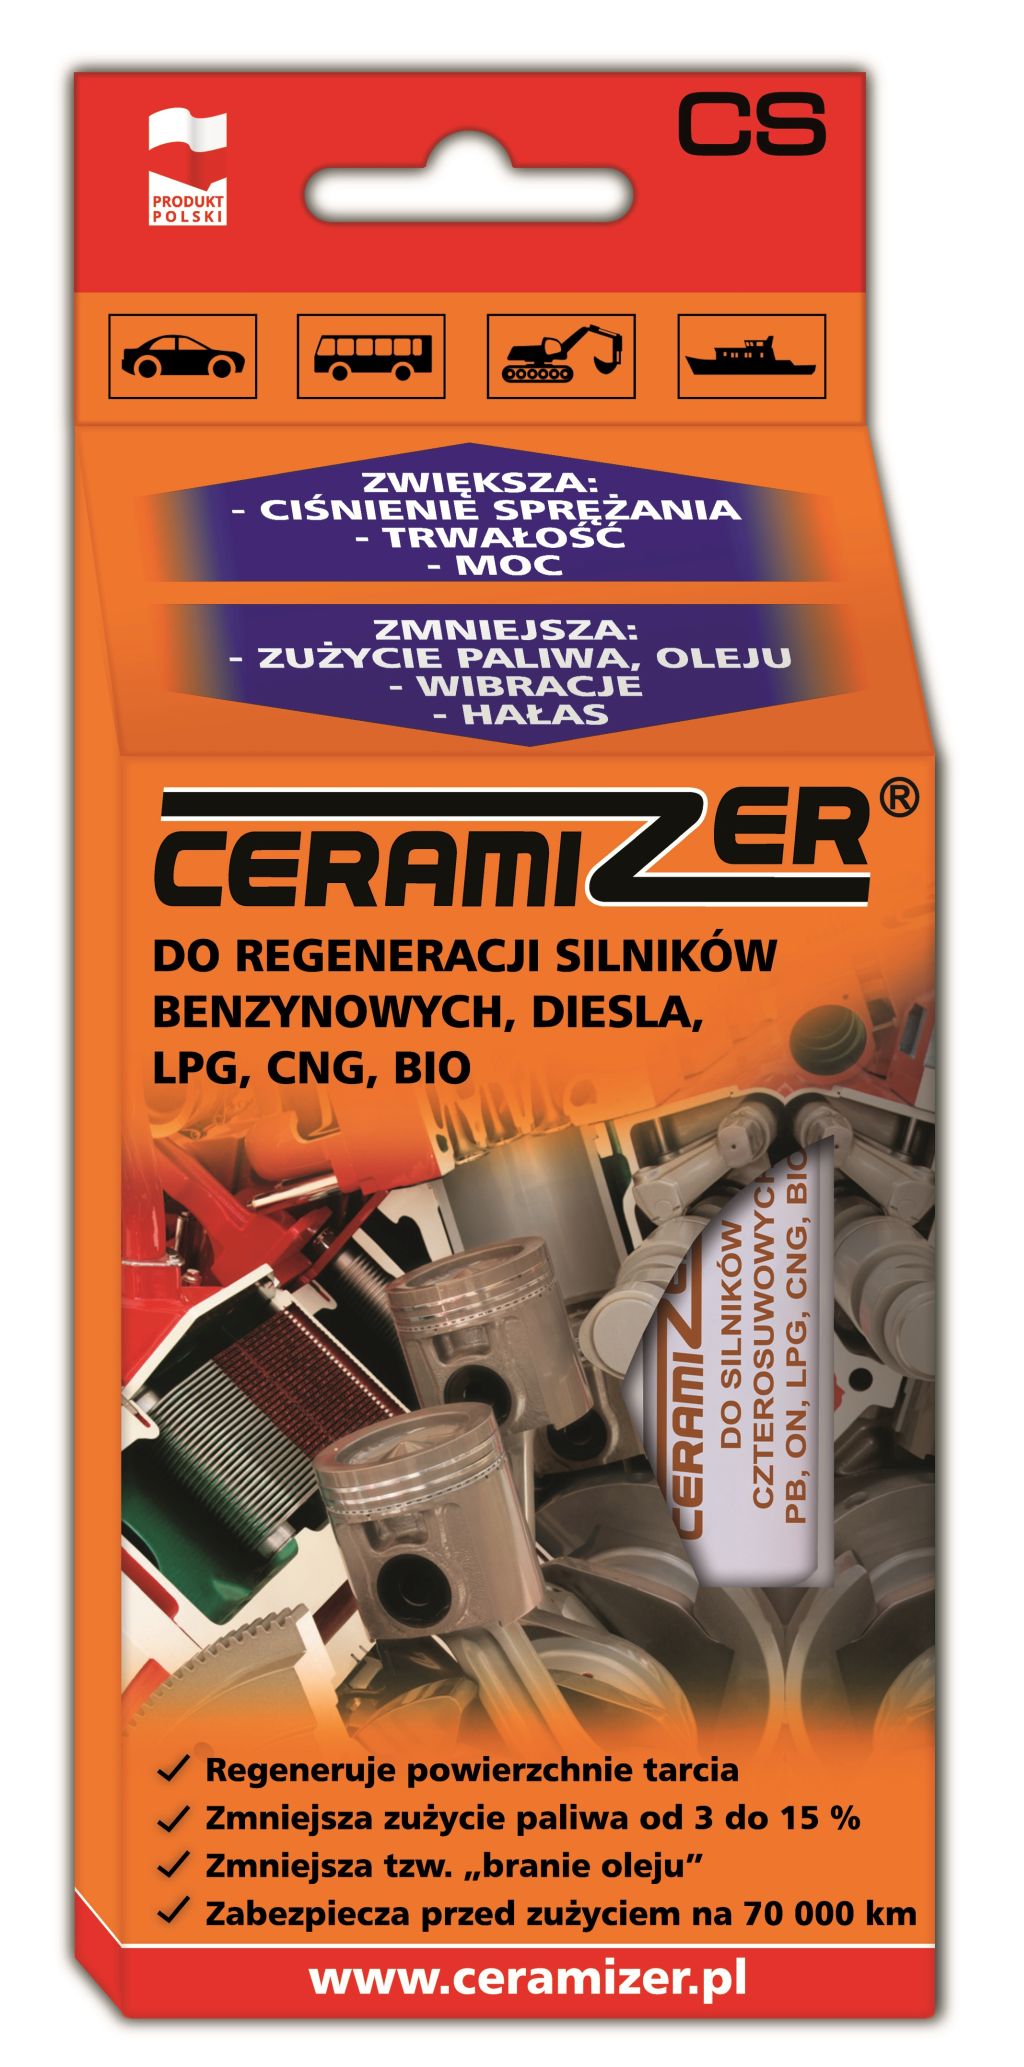 Ceramizer CS – Zregeneruj silnik swojego samochodu !